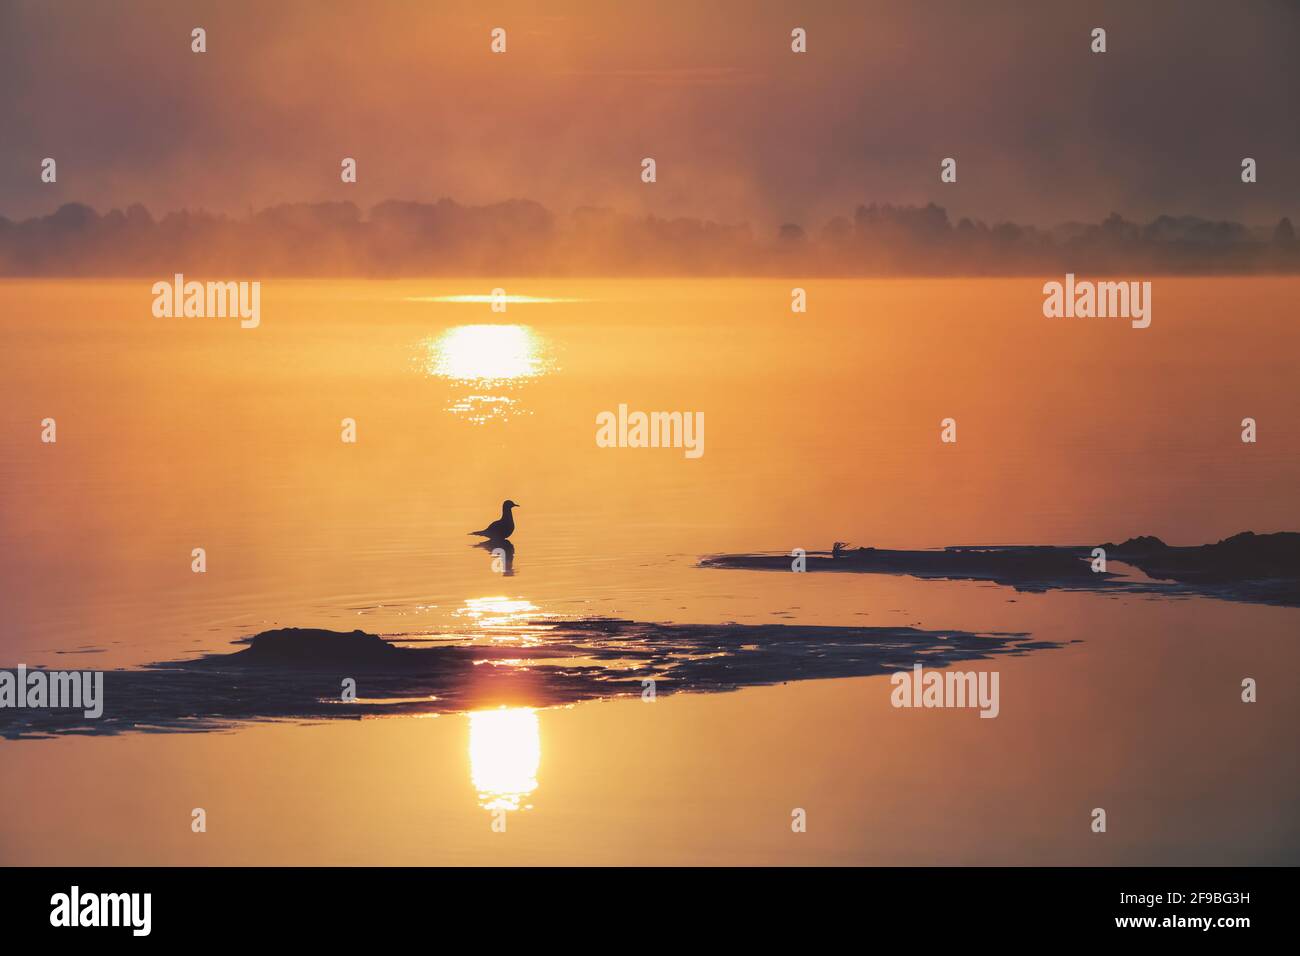 Der wunderschöne Sonnenuntergang spiegelt sich auf dem See wider. Wilde Ente im Wasser. Fantastischer Sommermorgen. Nebelwald. Naturlandschaft. Stockfoto